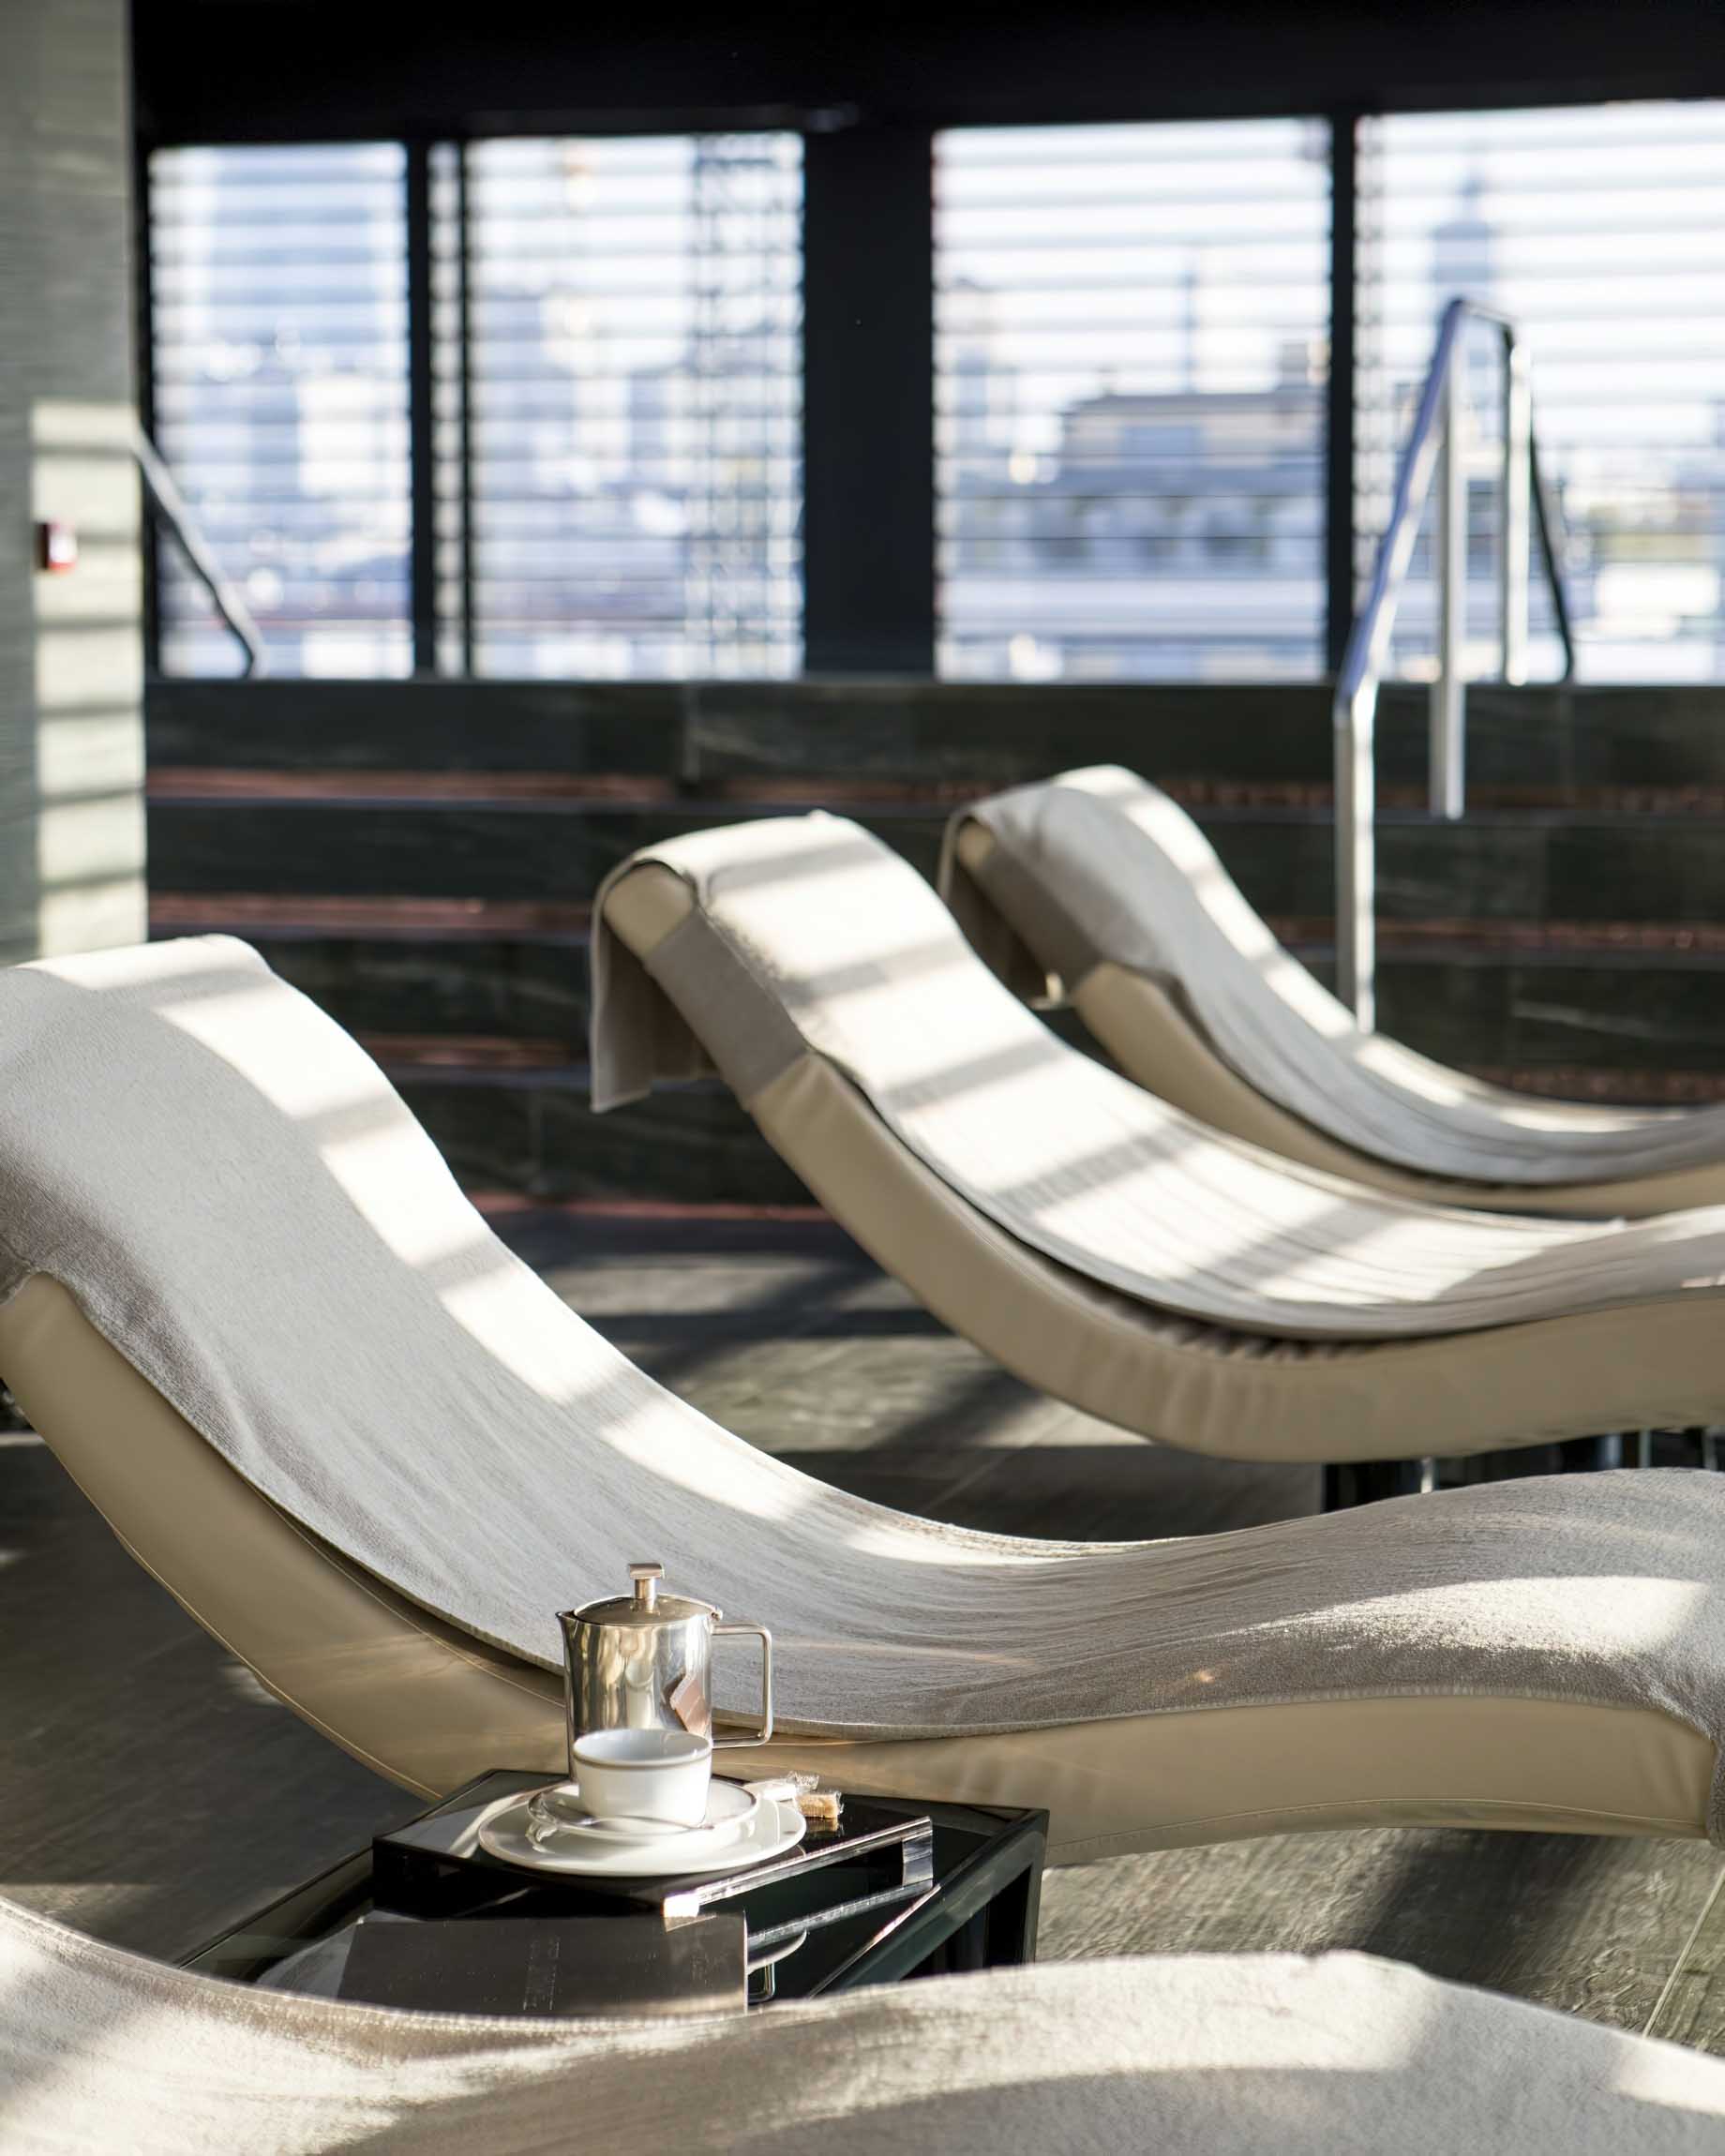 122 – Armani Hotel Milano – Milan, Italy – Armani SPA Lounge Chairs